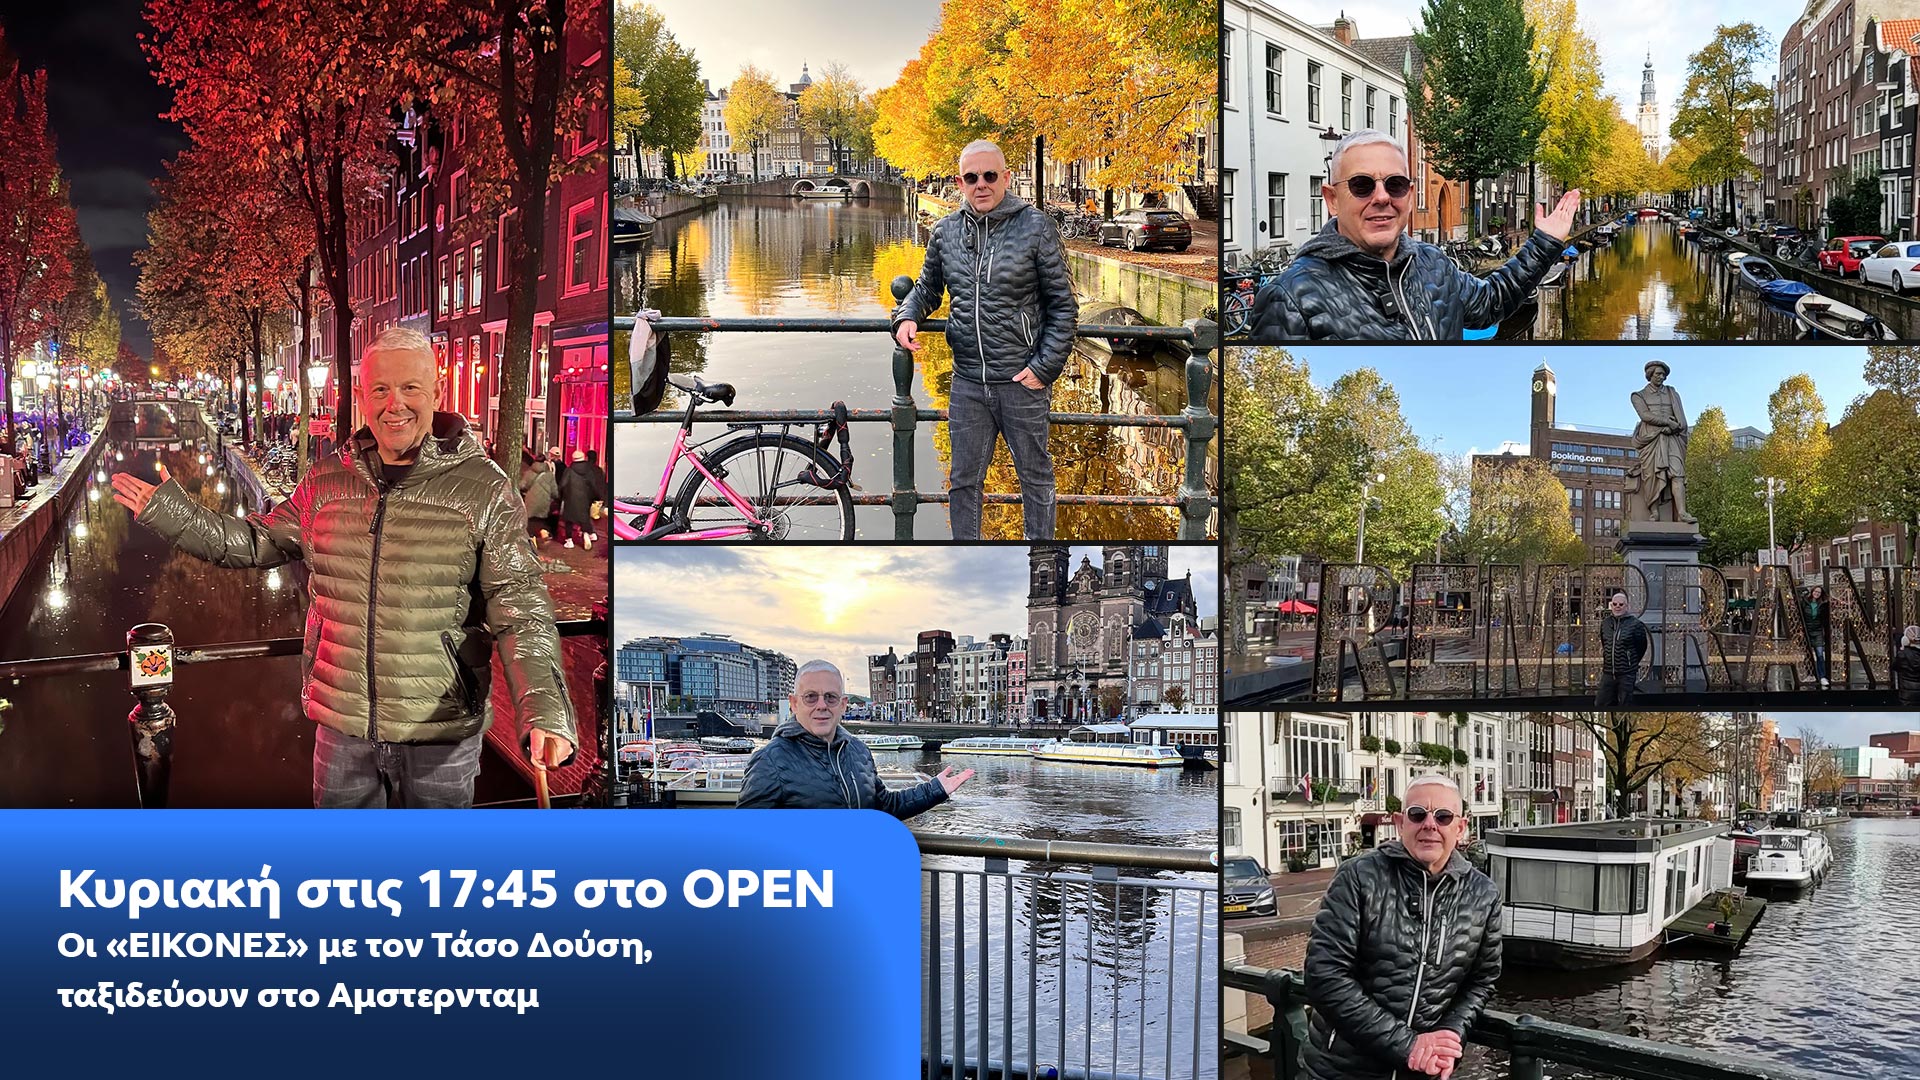 Δελτίο τύπου - Οι ΕΙΚΟΝΕΣ με τον Τάσο Δούση ταξιδεύουν στο Άμστερνταμ